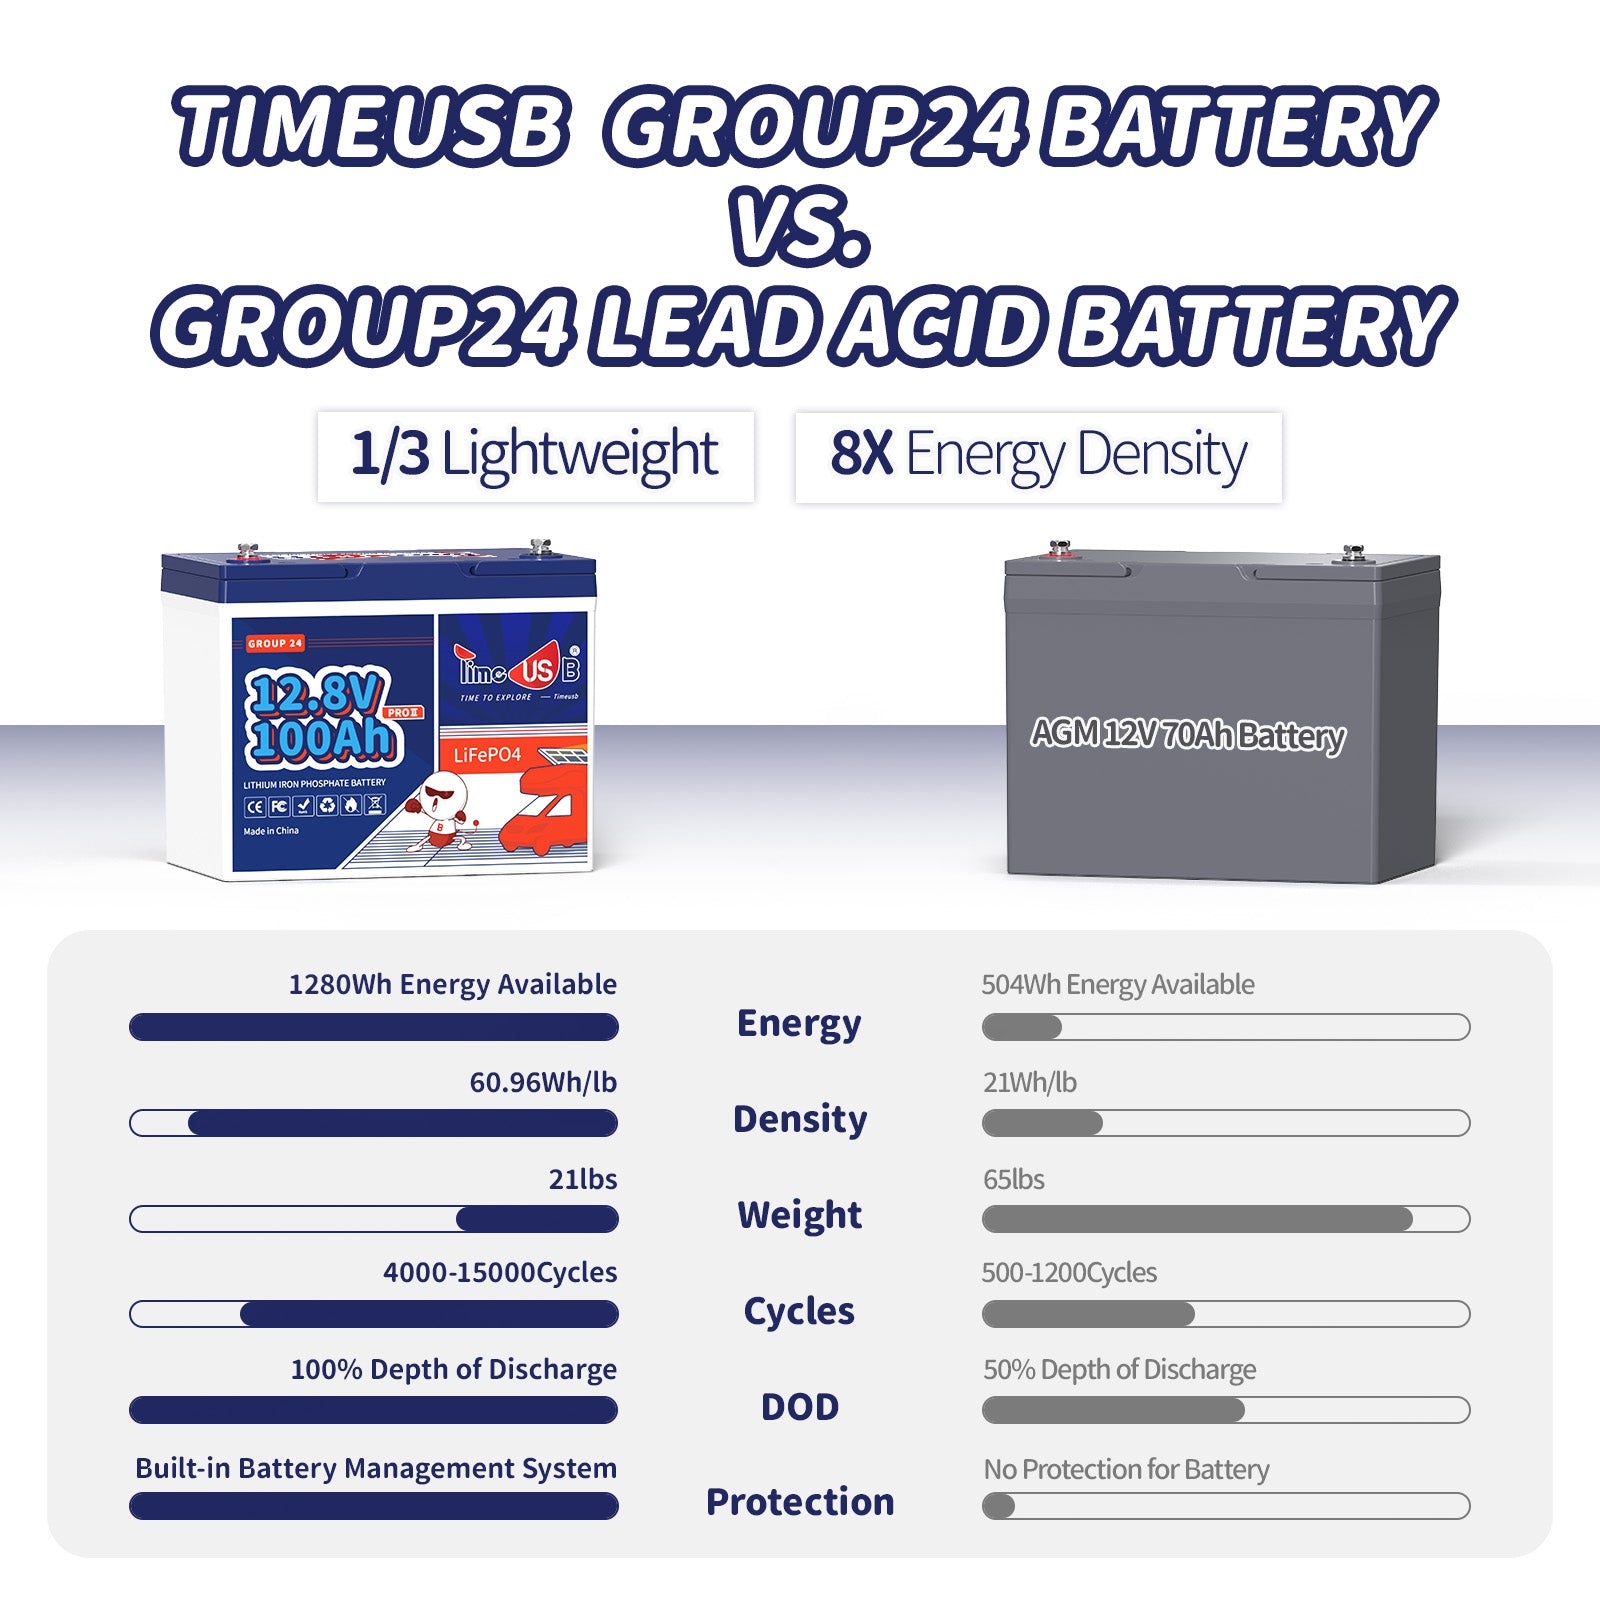 timeusb lithium battery lifespan